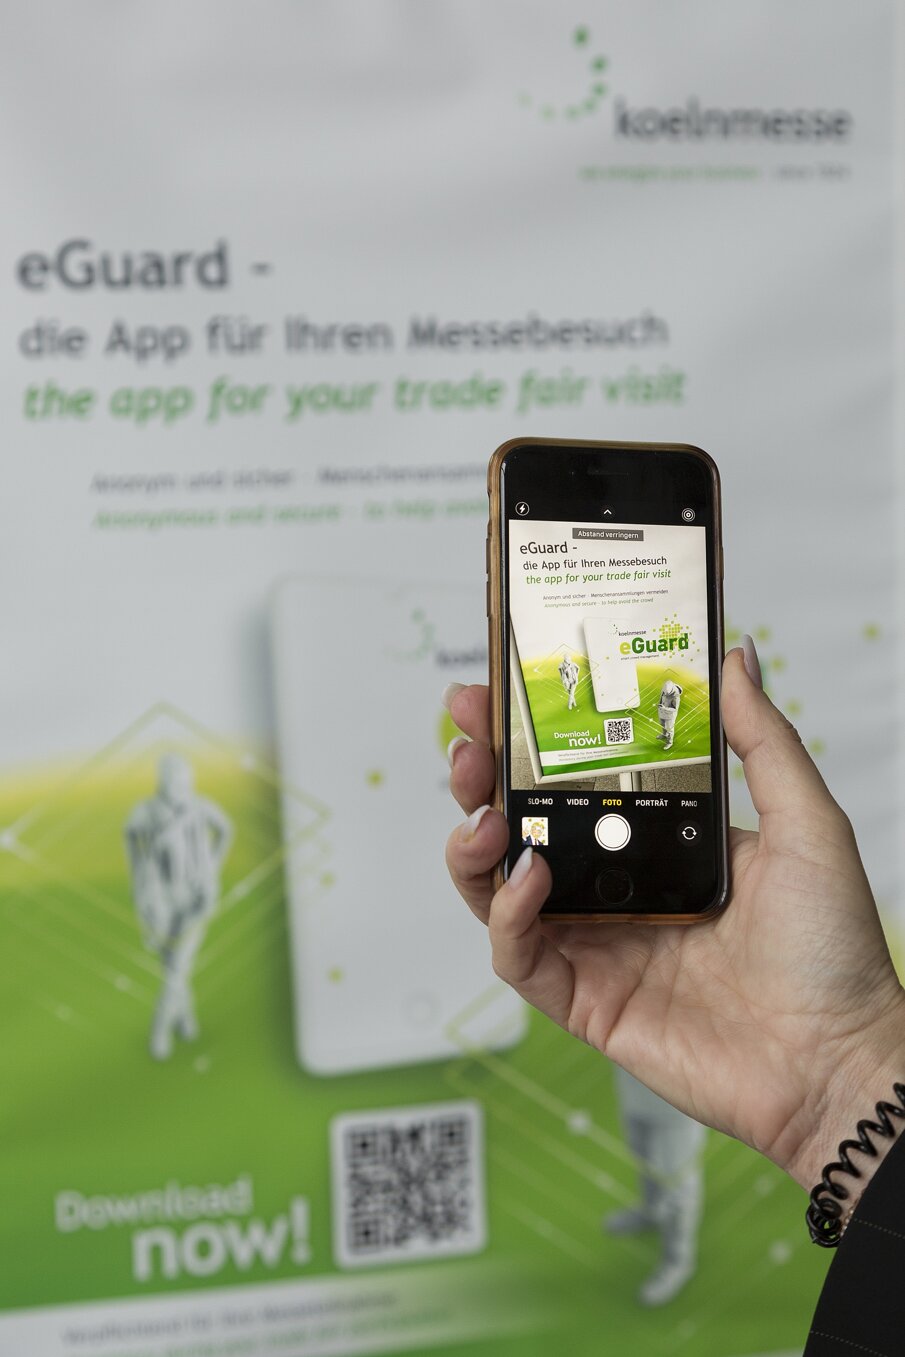 Les participants à l’IDS devront installer l’application mobile eGuard (Photo : IDS Cologne)